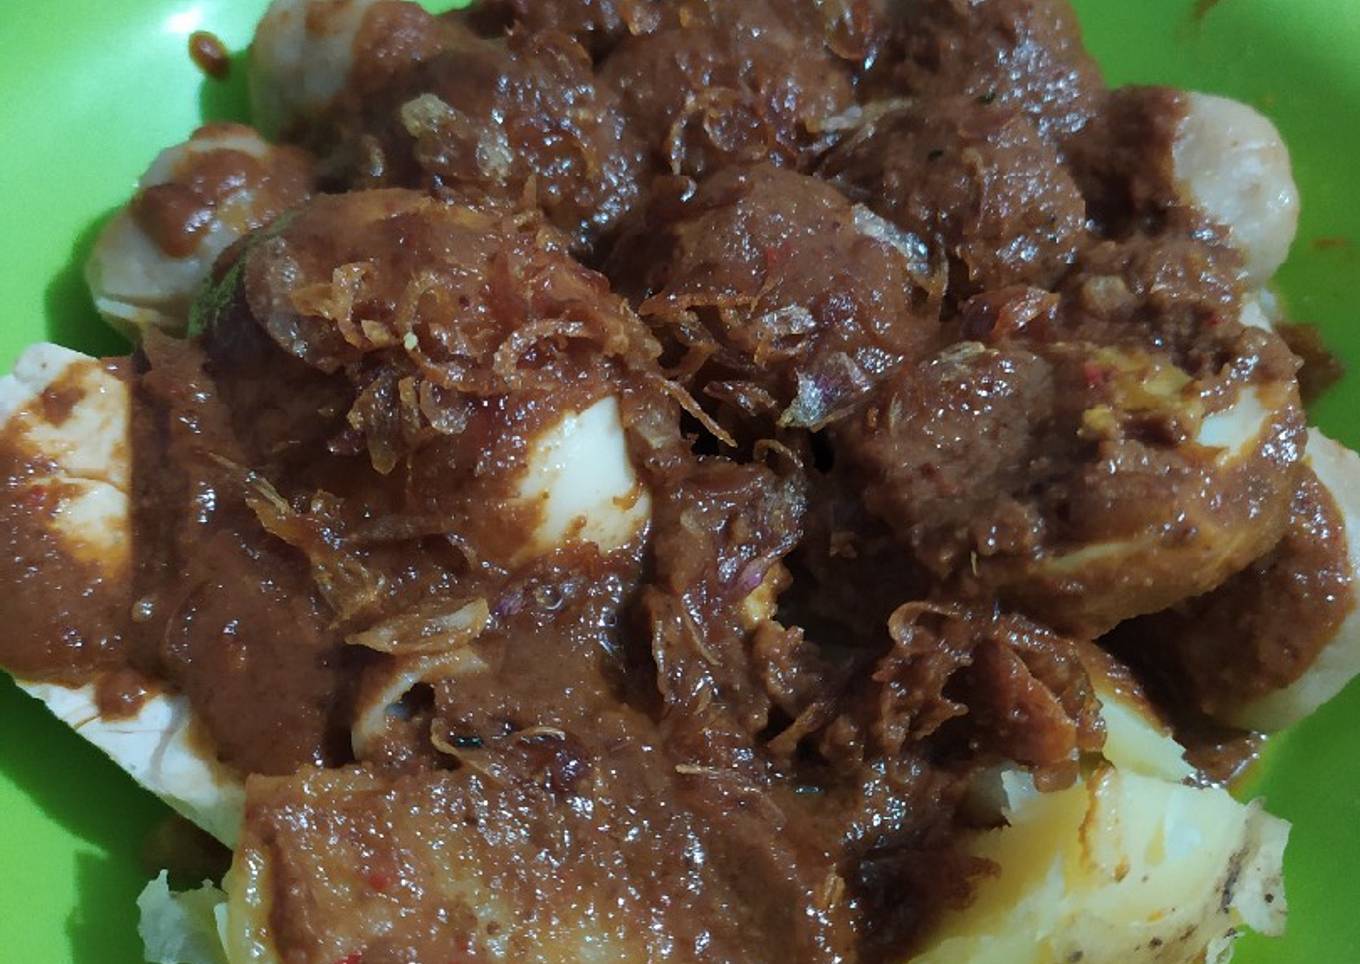 Siomay Bandung - resep kuliner nusantara